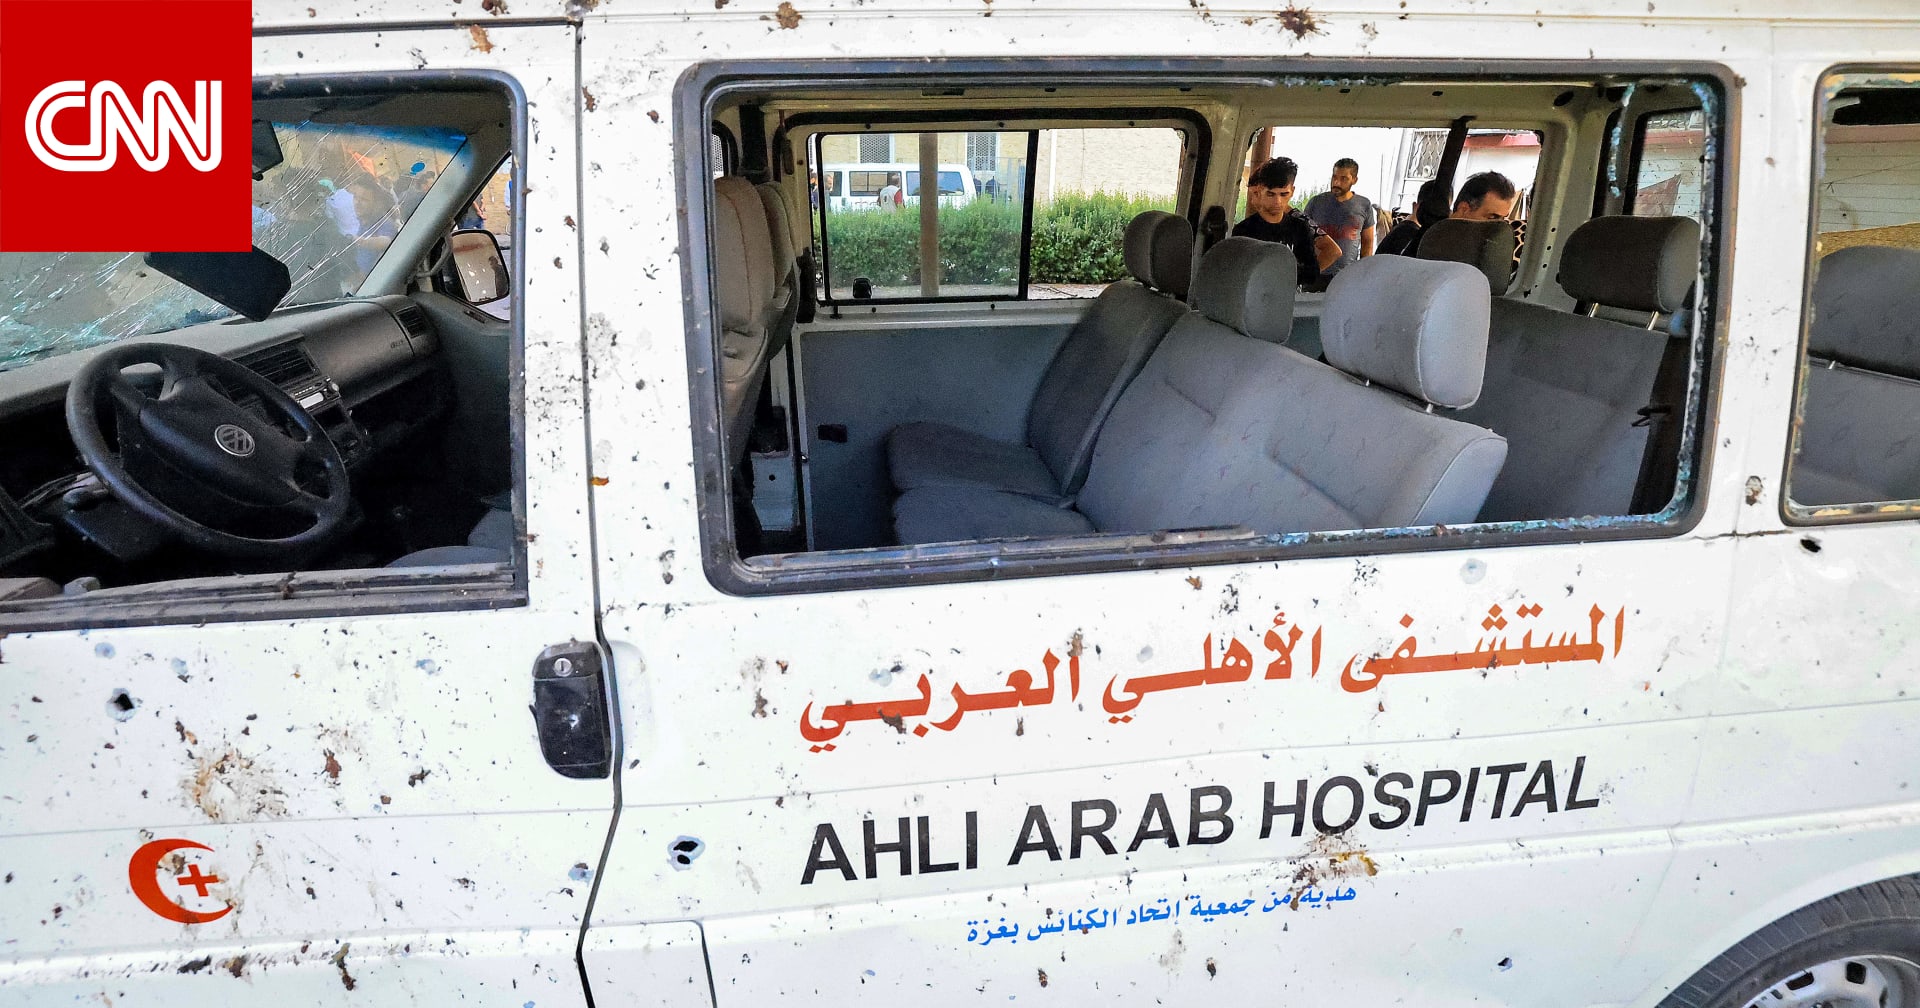 الجيش الإسرائيلي ينشر تسجيلا صوتيا لمحادثة مزعومة بين عناصر حماس بعد انفجار المستشفى المعمداني